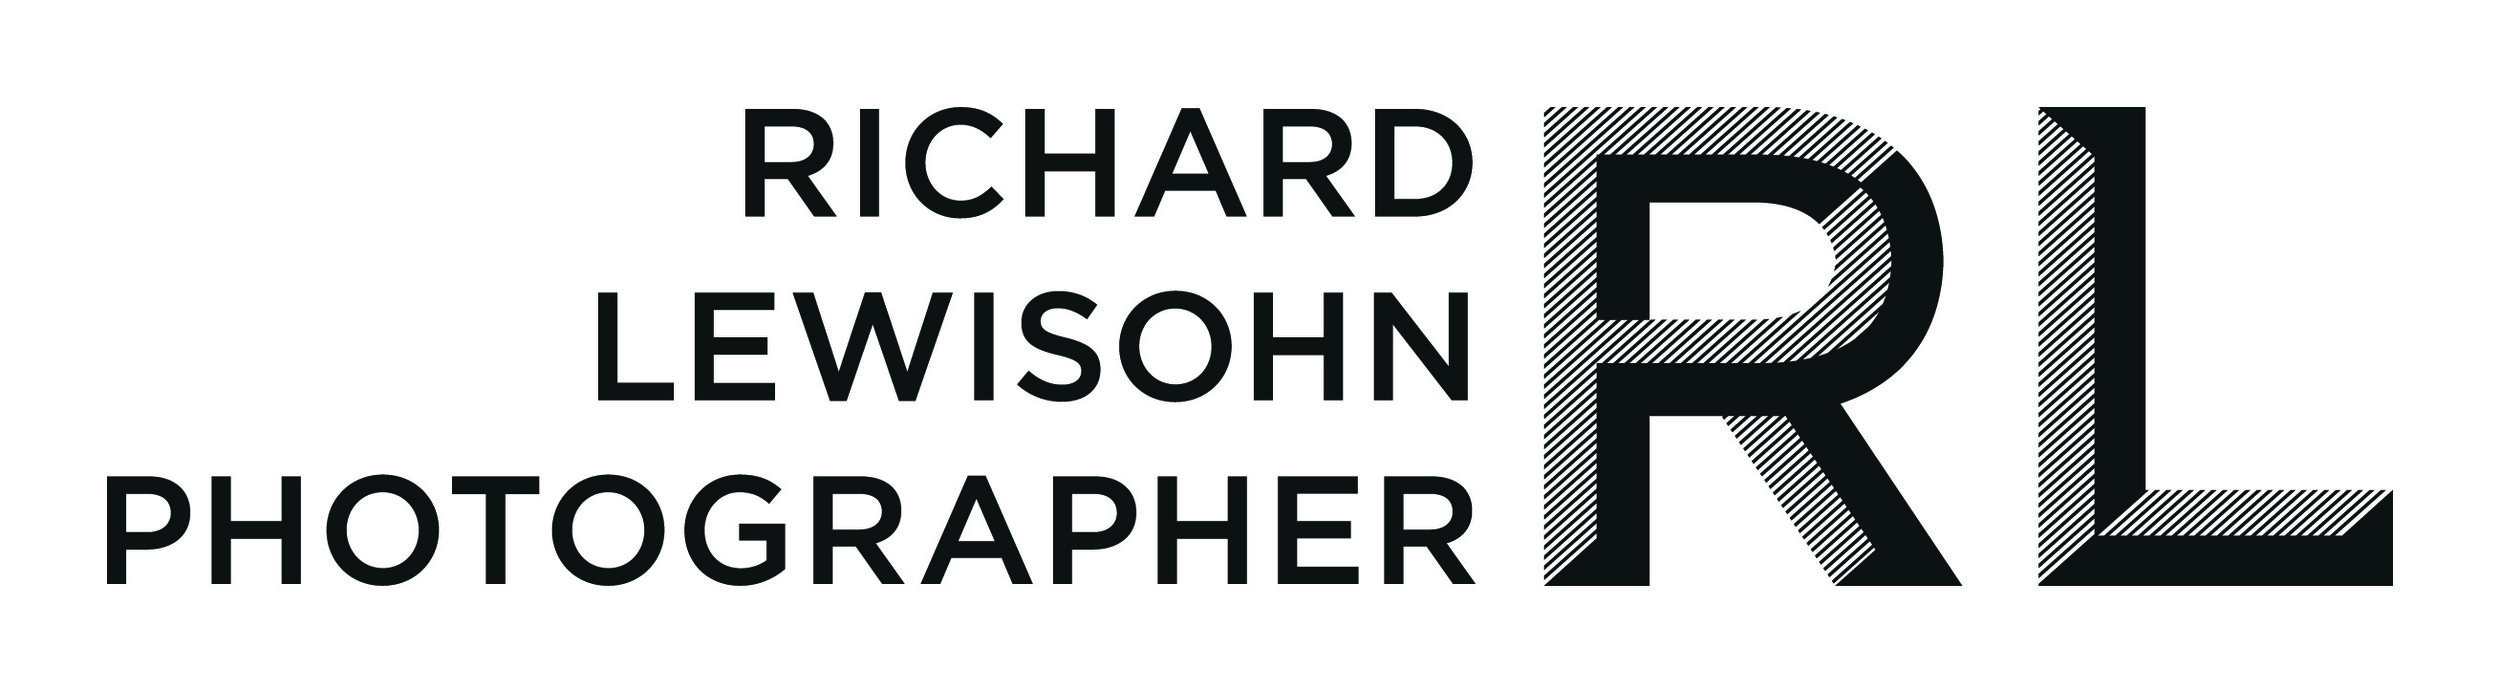 Richard Lewisohn Photographer